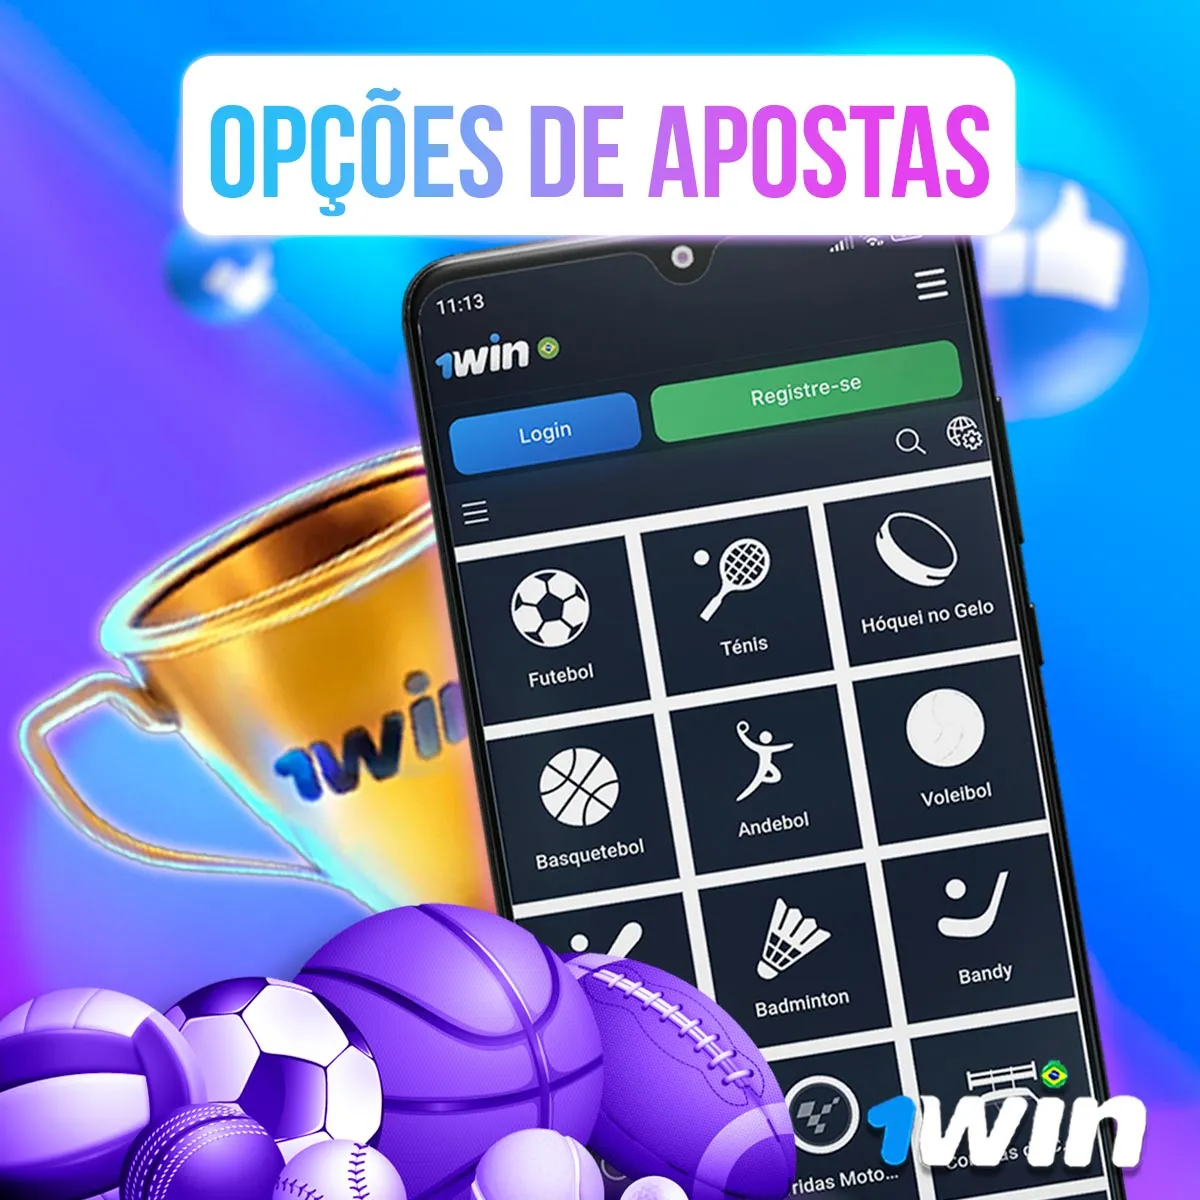 Mercados de apostas no aplicativo móvel 1win no mercado de apostas brasileiro